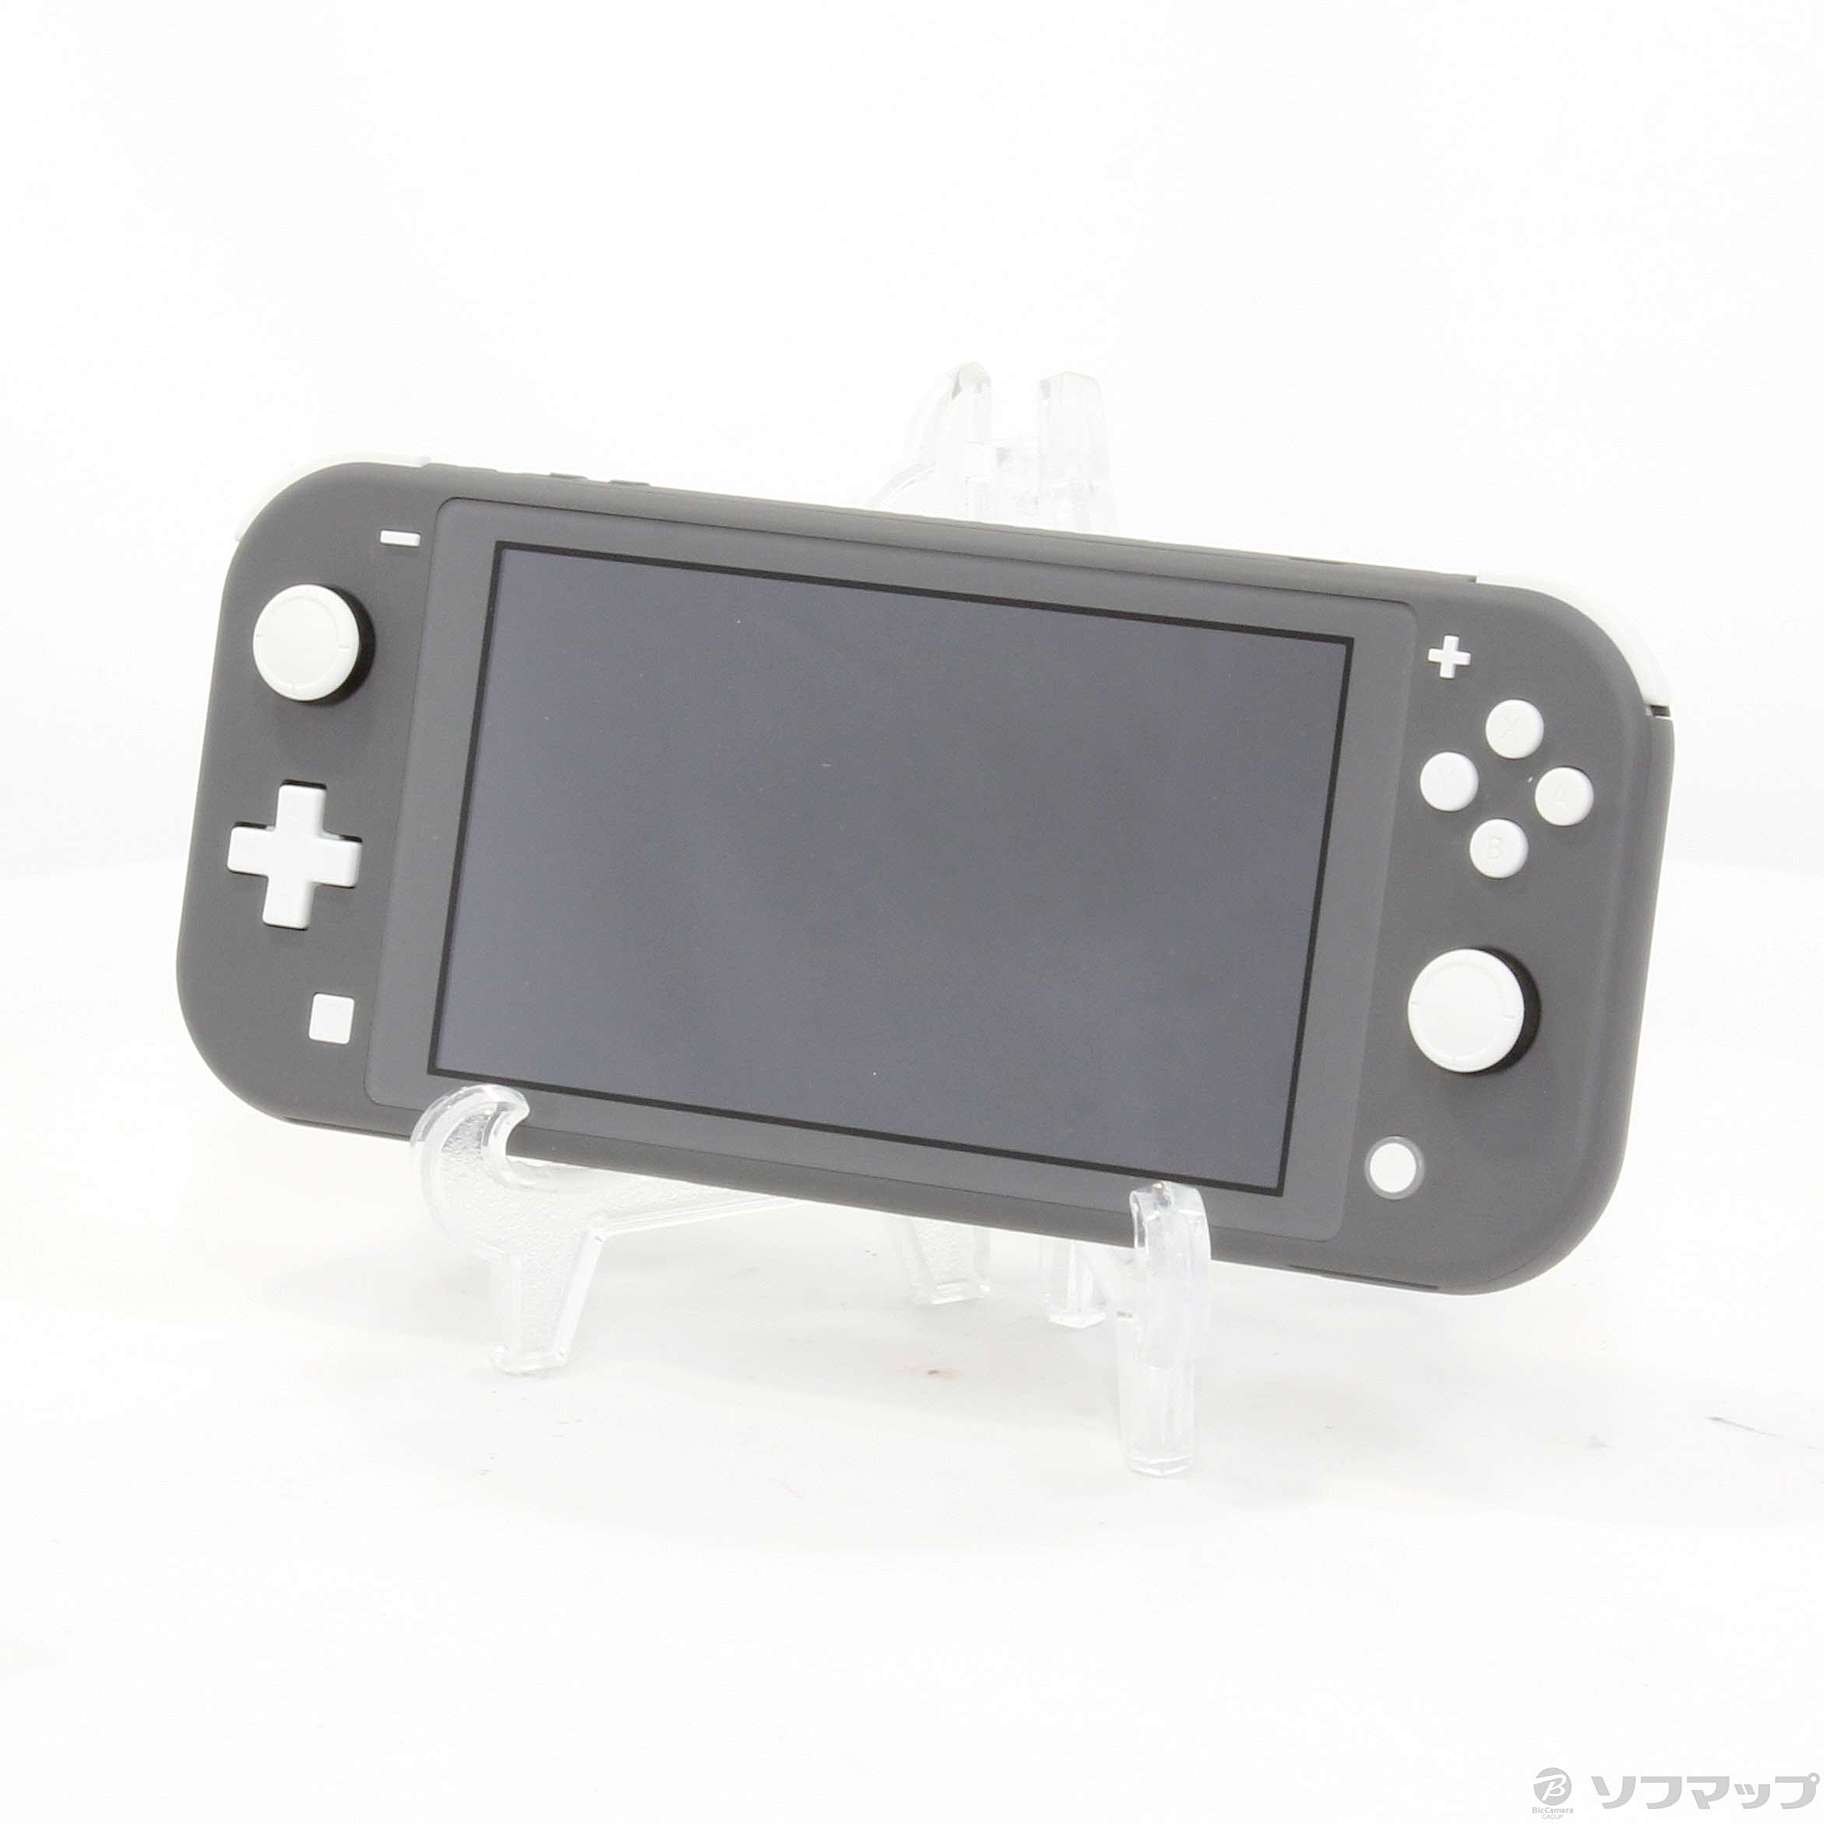 中古】セール対象品 Nintendo Switch Lite グレー ◇03/25(金)値下げ ...